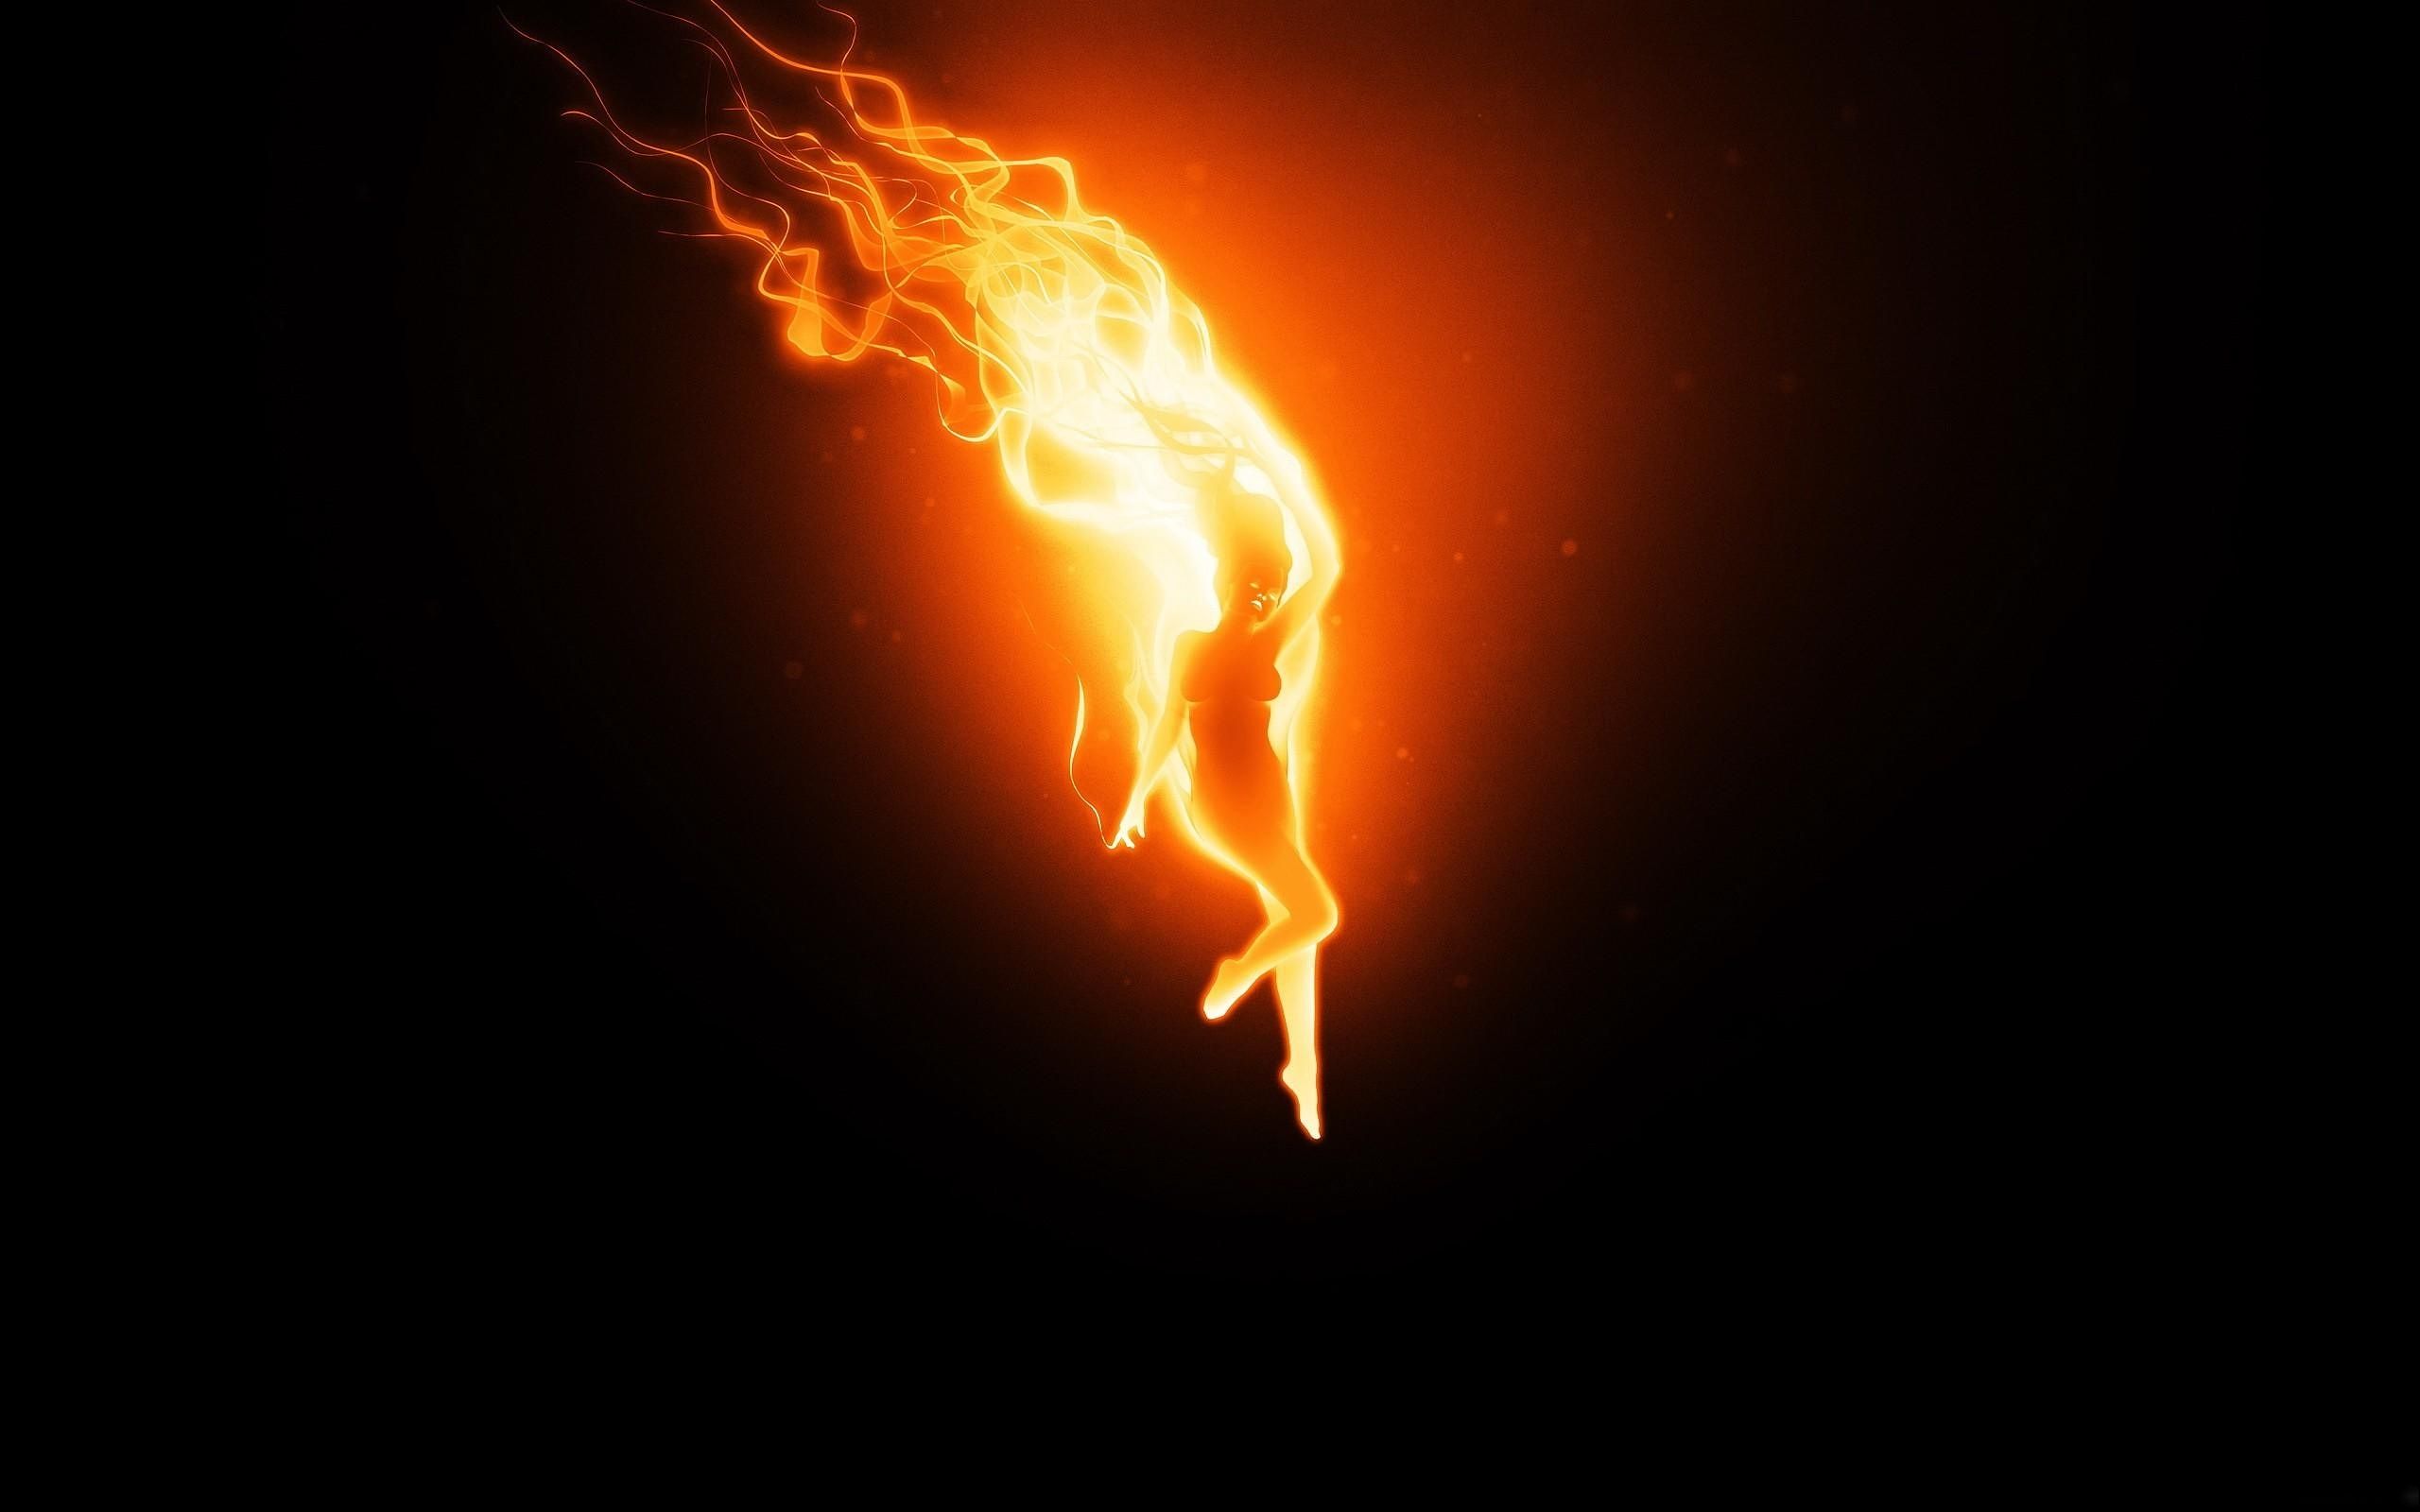 огненная фея, пламя в форме голой девушки, 3D обои для рабочего стола, 3D-графика